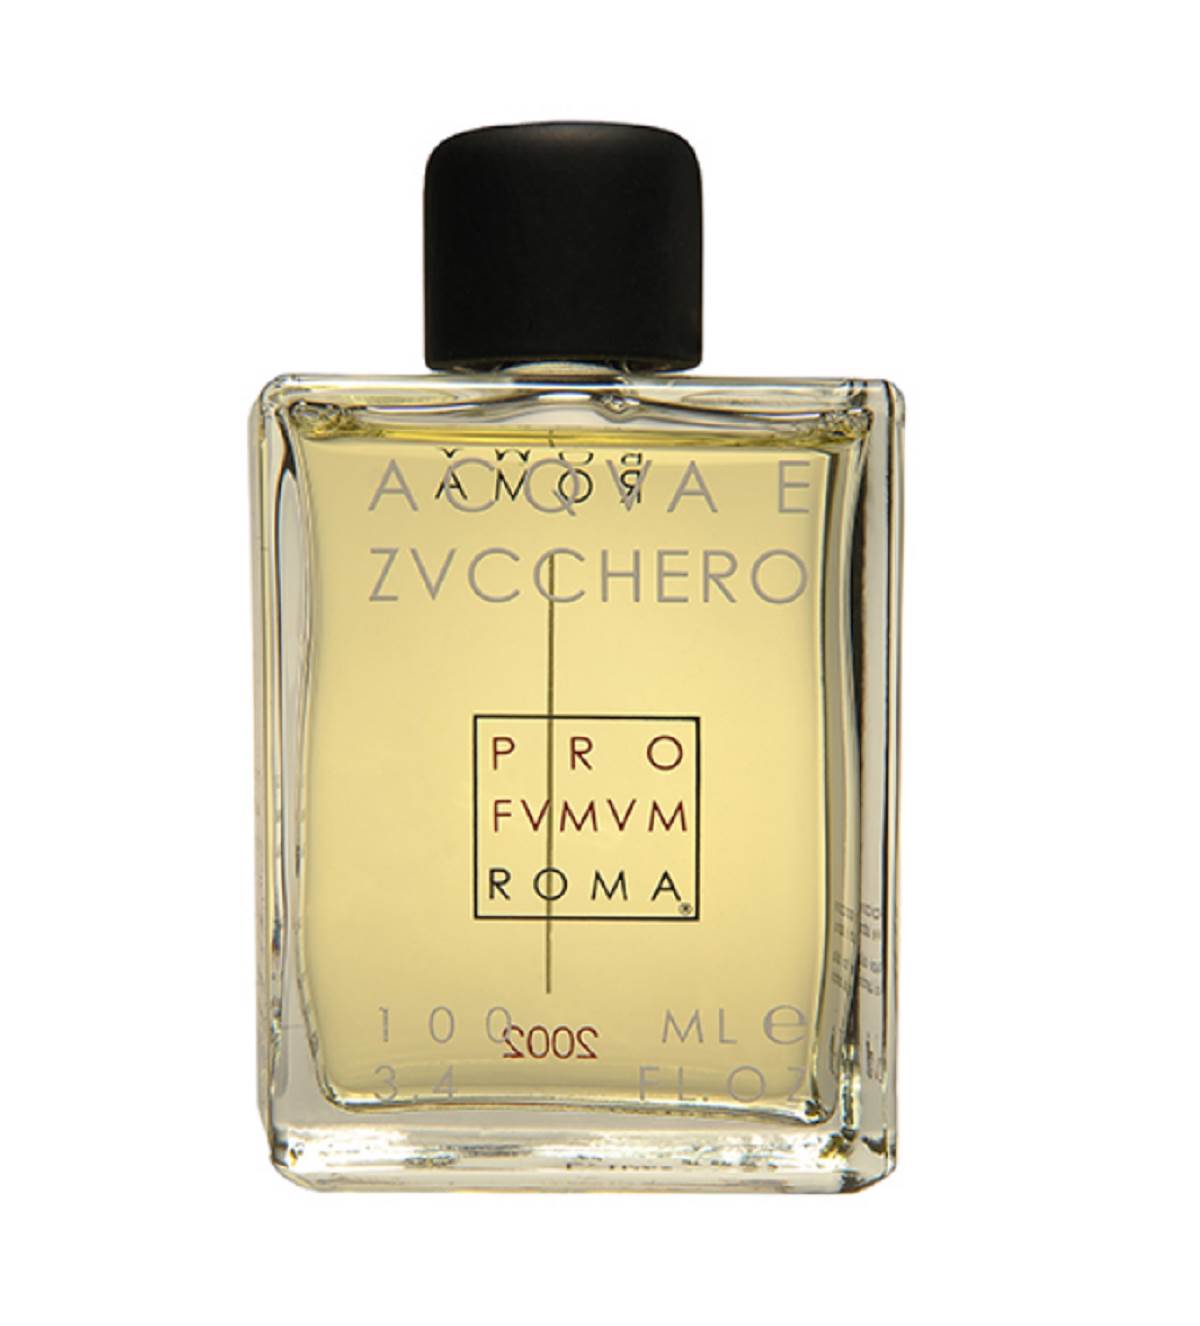  Vanilu takođe sadrži i popularni Acqva e Zucchero parfem, koji je kreiran u čast olfaktornih i čulnih zadovoljstava. 